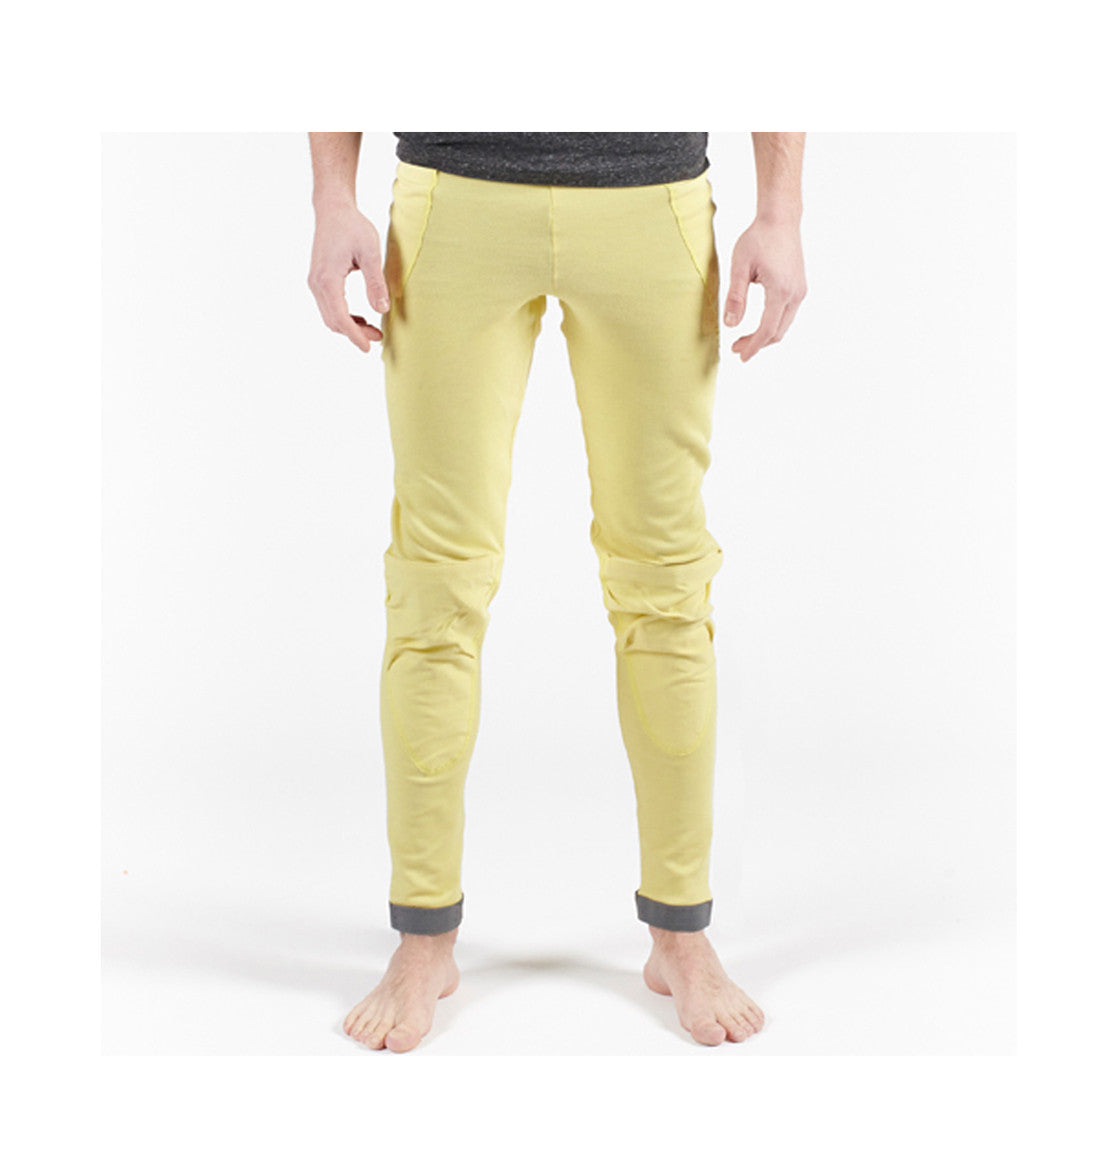 Bowtex - Unisex Kevlar Legging - Yellow